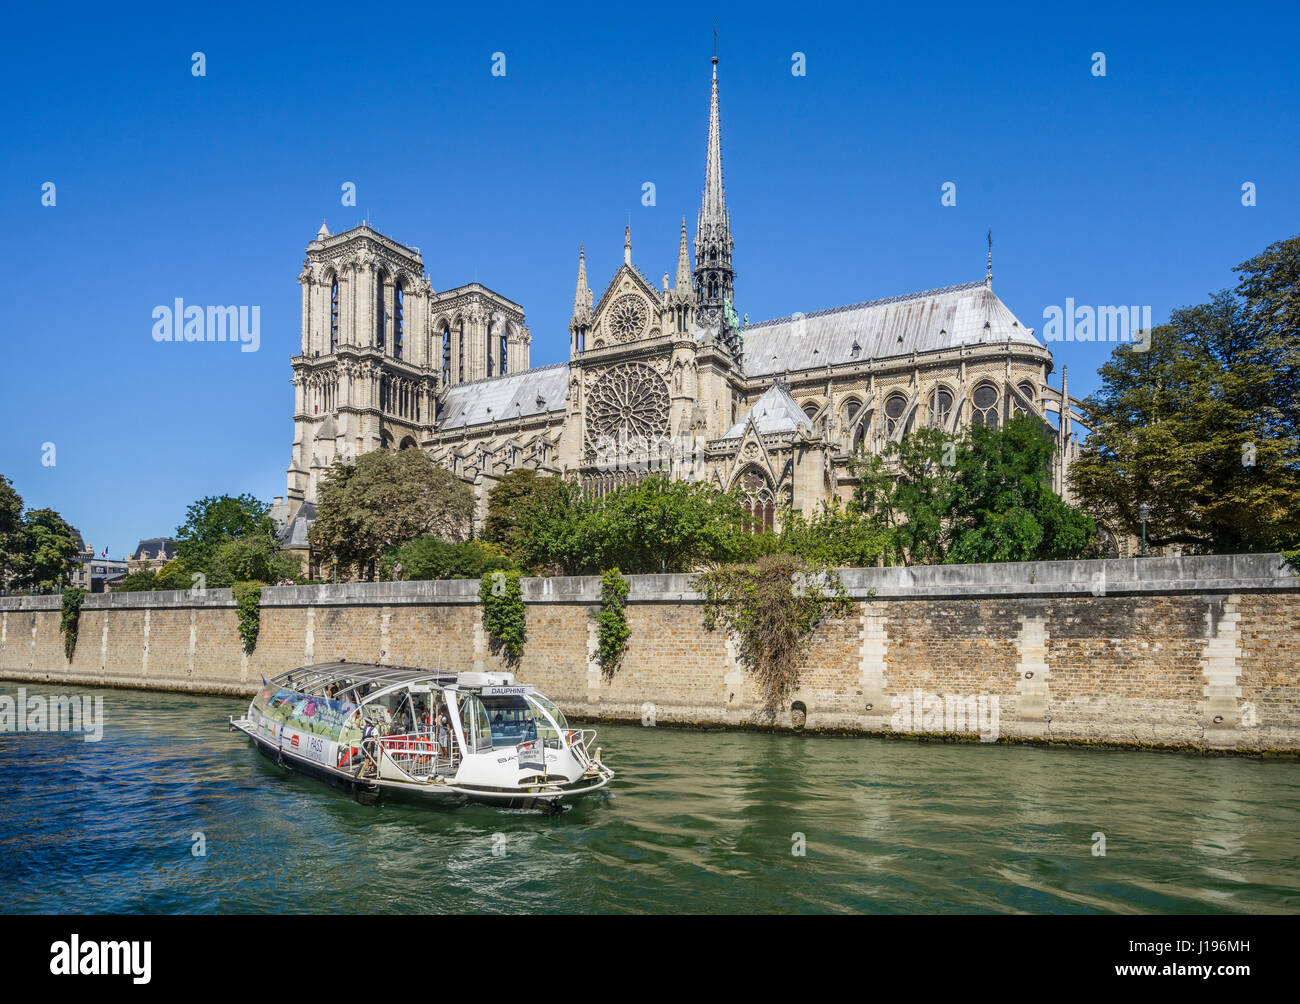 Francia, Parigi, Senna, Ile de la Cite, un fiume Senna crociera in barca passando è la cattedrale di Notre Dame, uno dei migliori esempi di gotico francese architetto Foto Stock